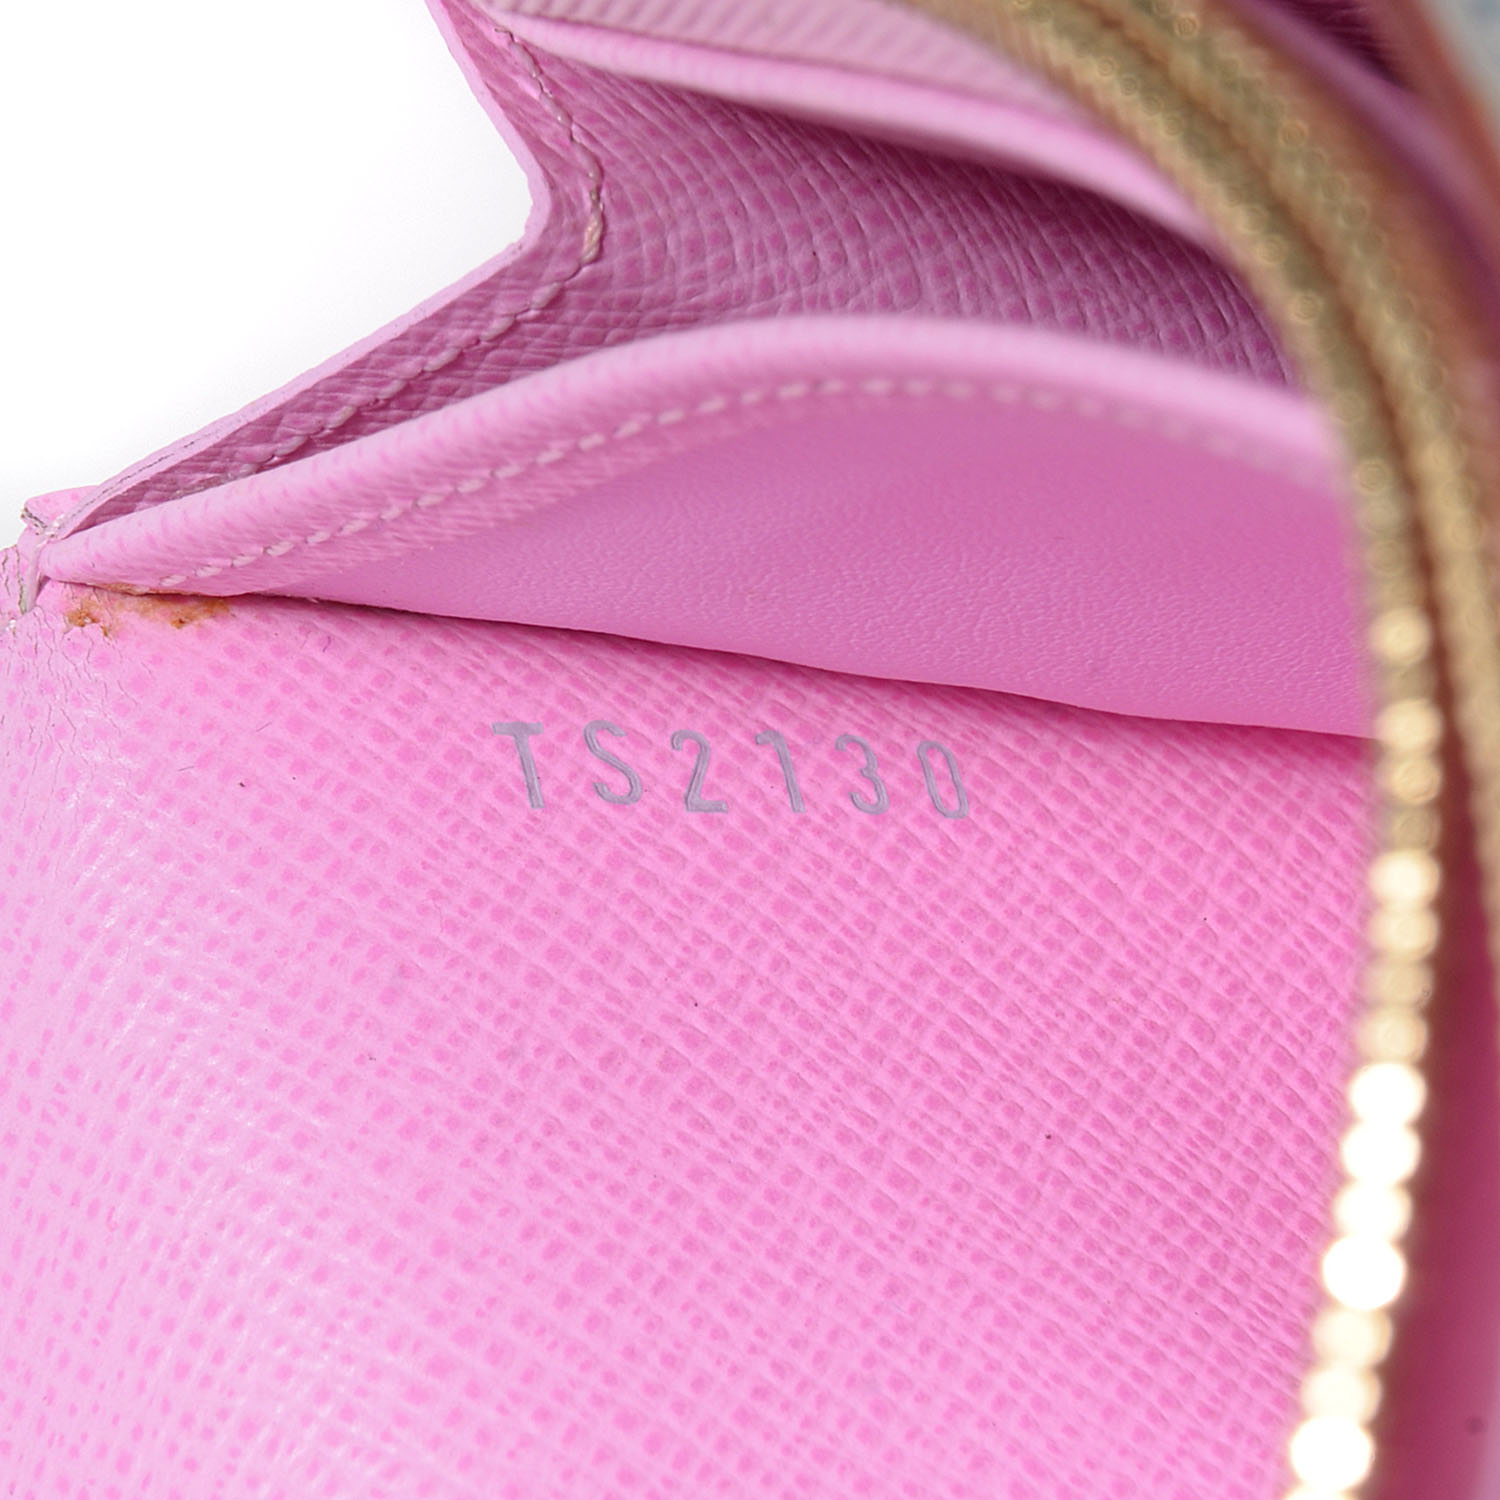 Louis Vuitton White Monogram Multicolor Sarah Flap Wallet Pink